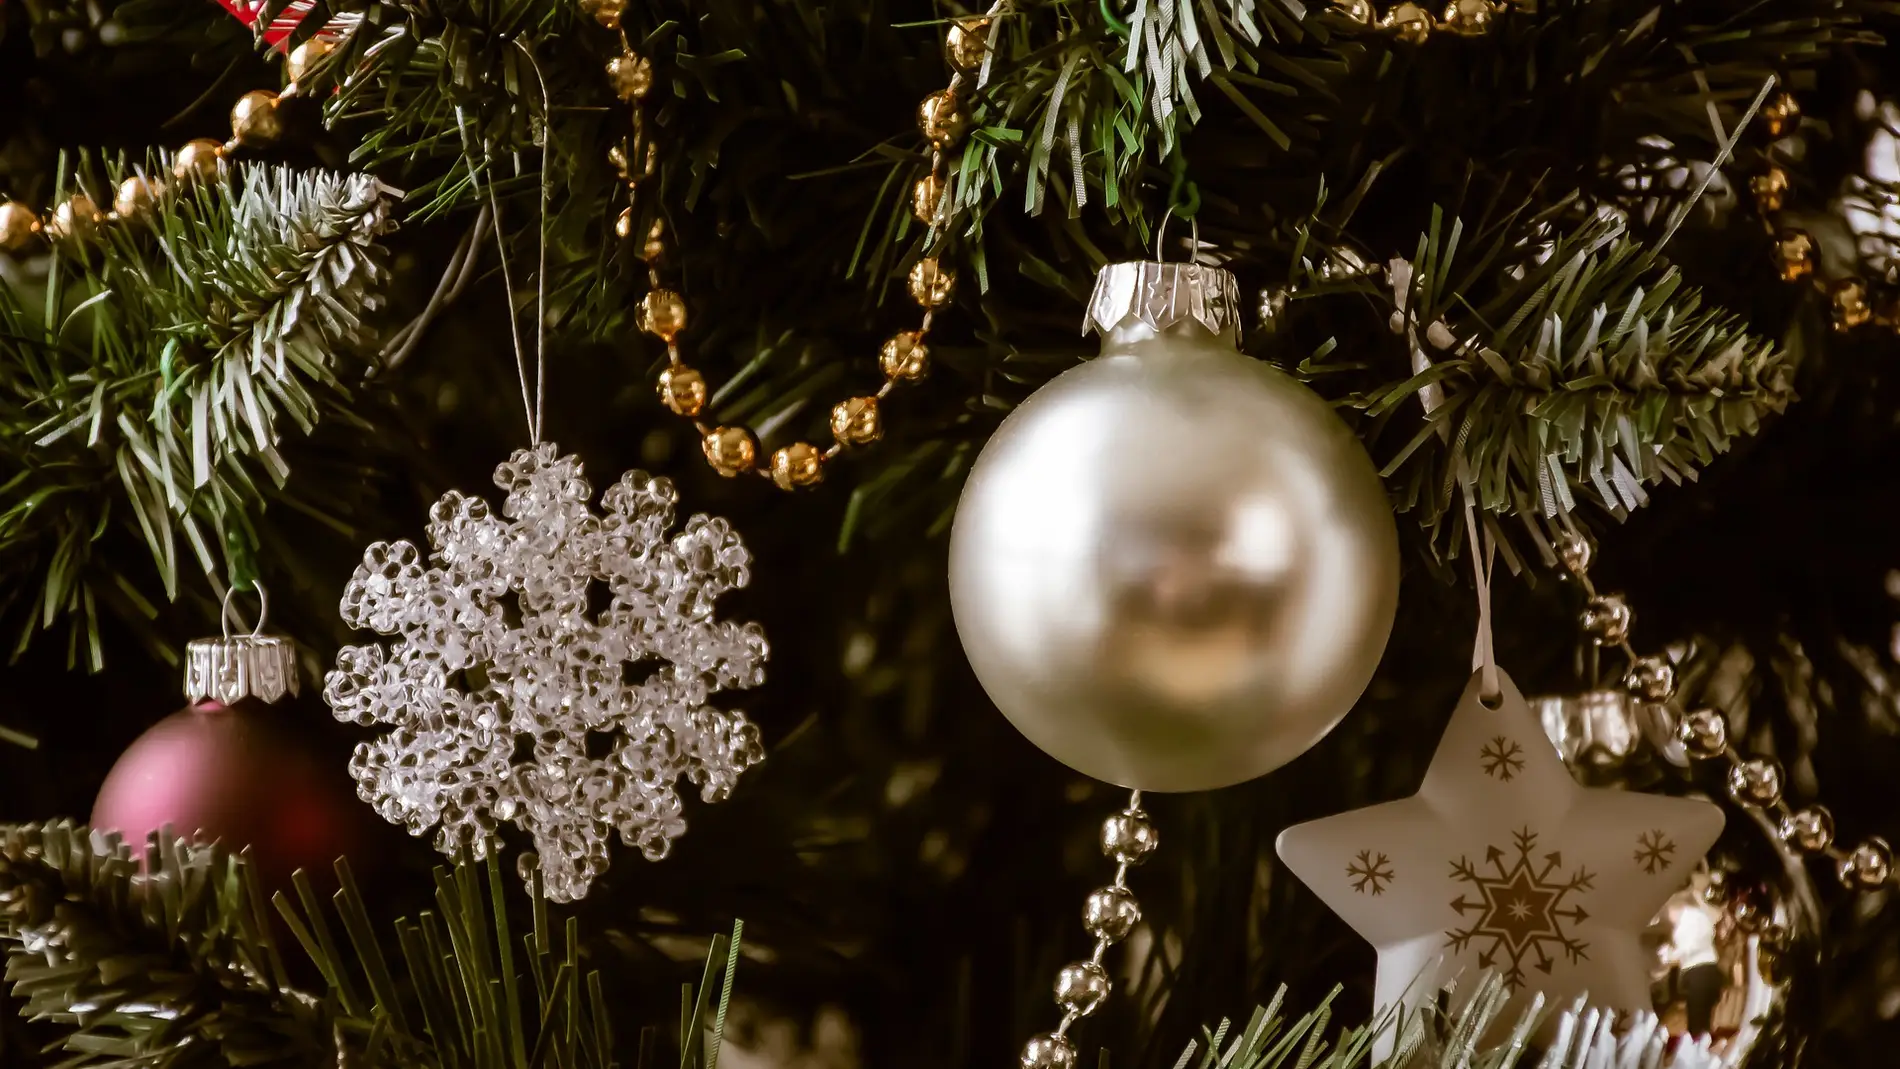 Imagen de los adornos de un árbol de Navidad.
Fuente: Onda Cero